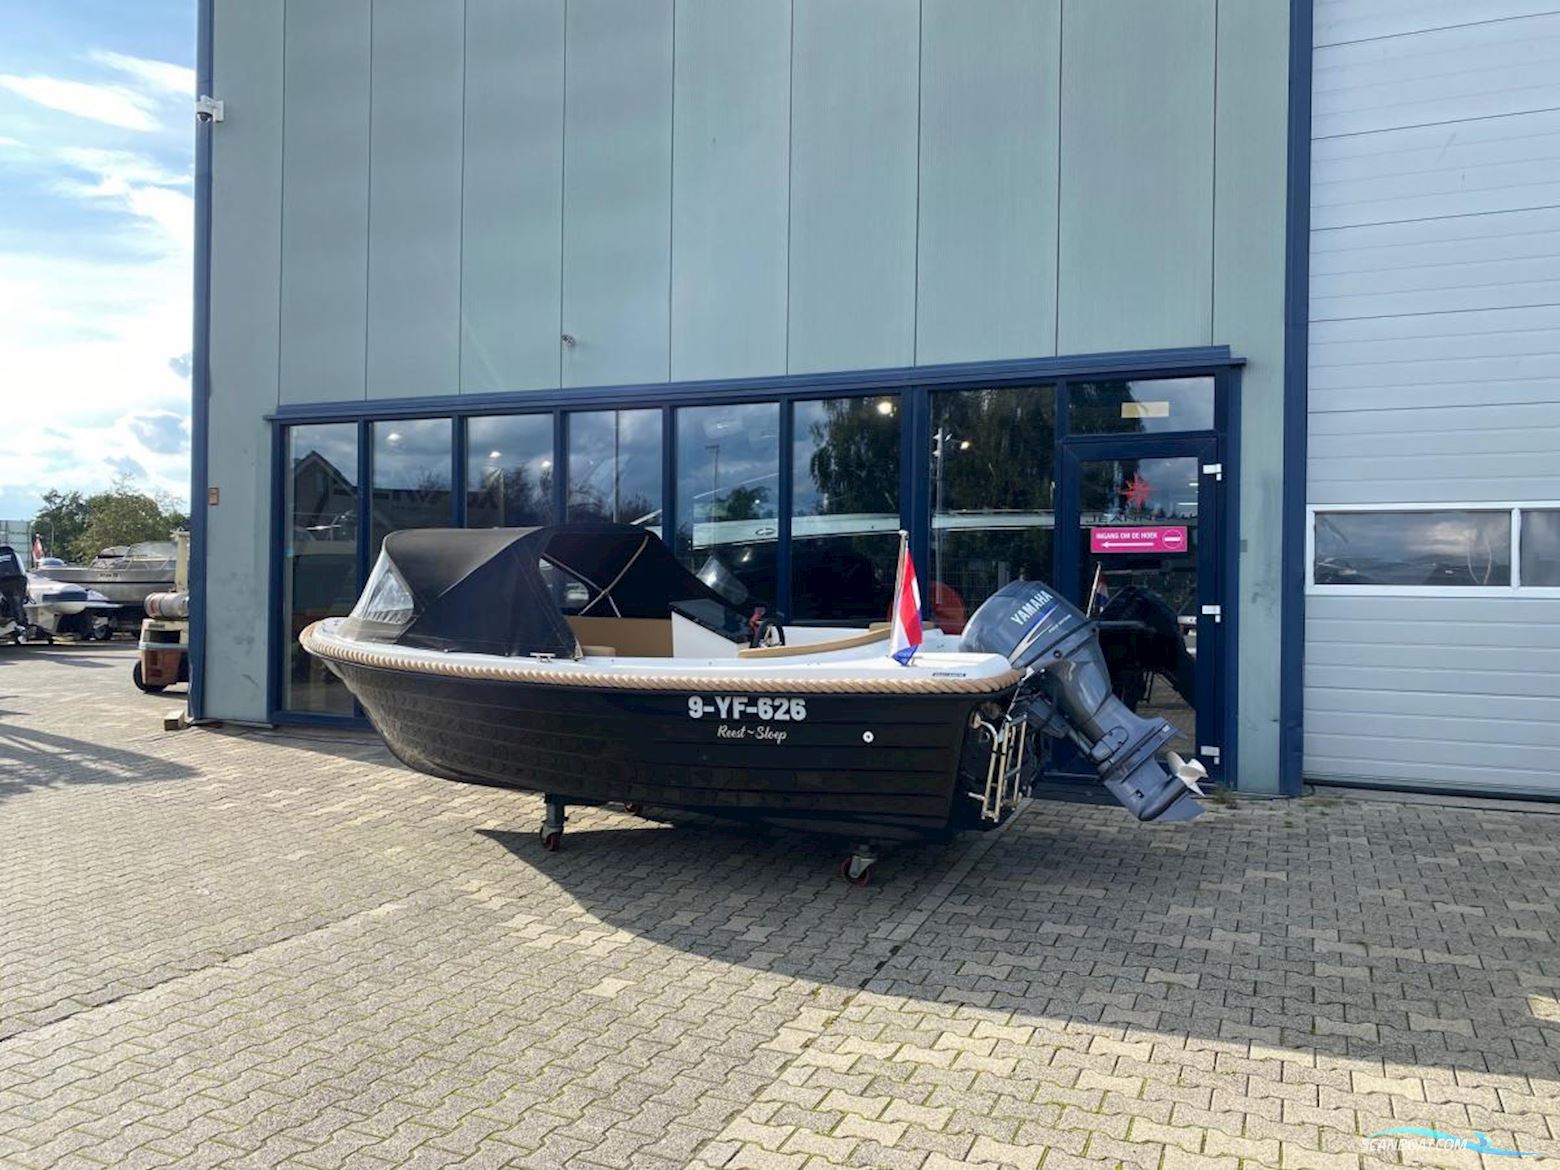 Reest Sloep 520 Classic Motor boat 2021, with Yamaha engine, The Netherlands